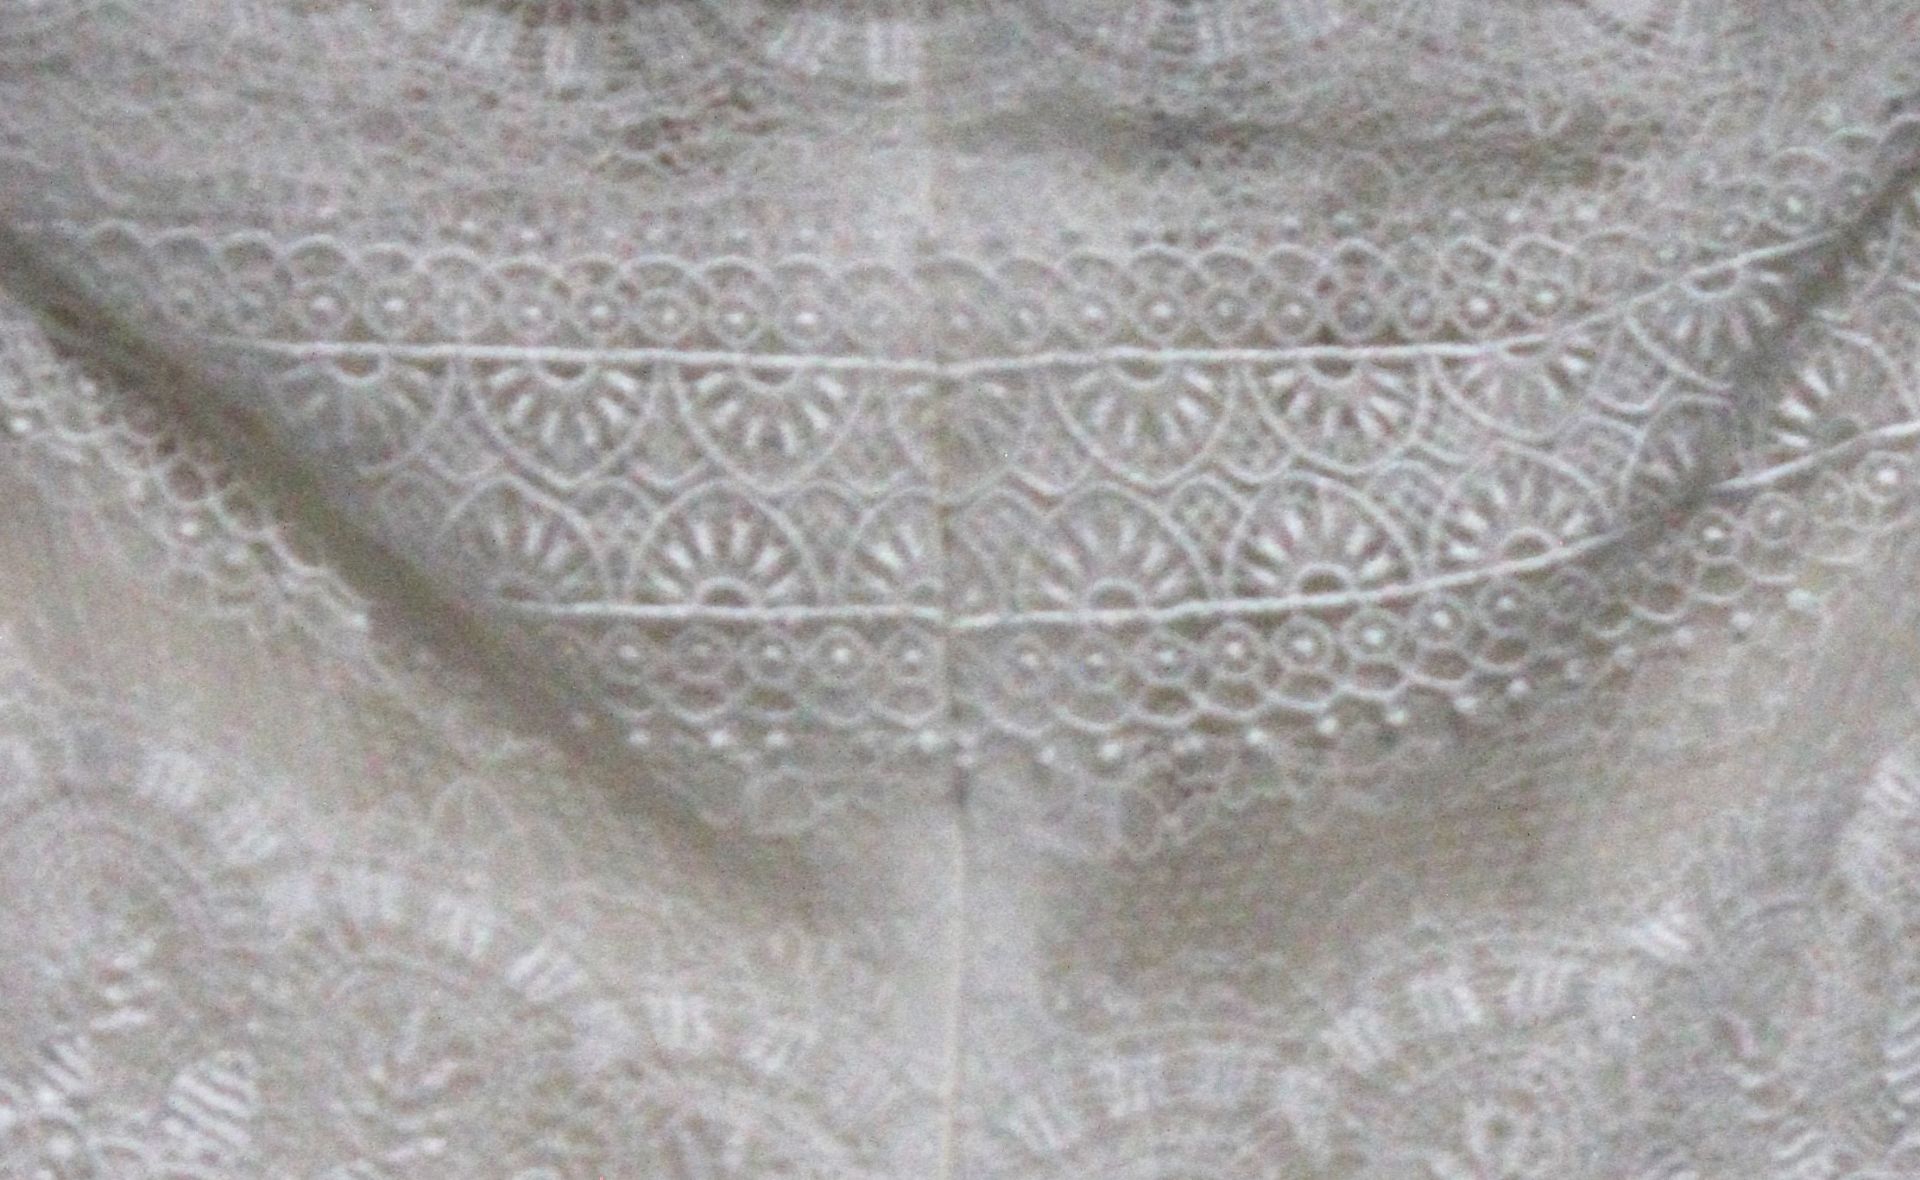 1 x DIANE LE GRAND Lace Off The Shoulder Designer Wedding Dress RRP £1,400 UK10 - Image 5 of 6